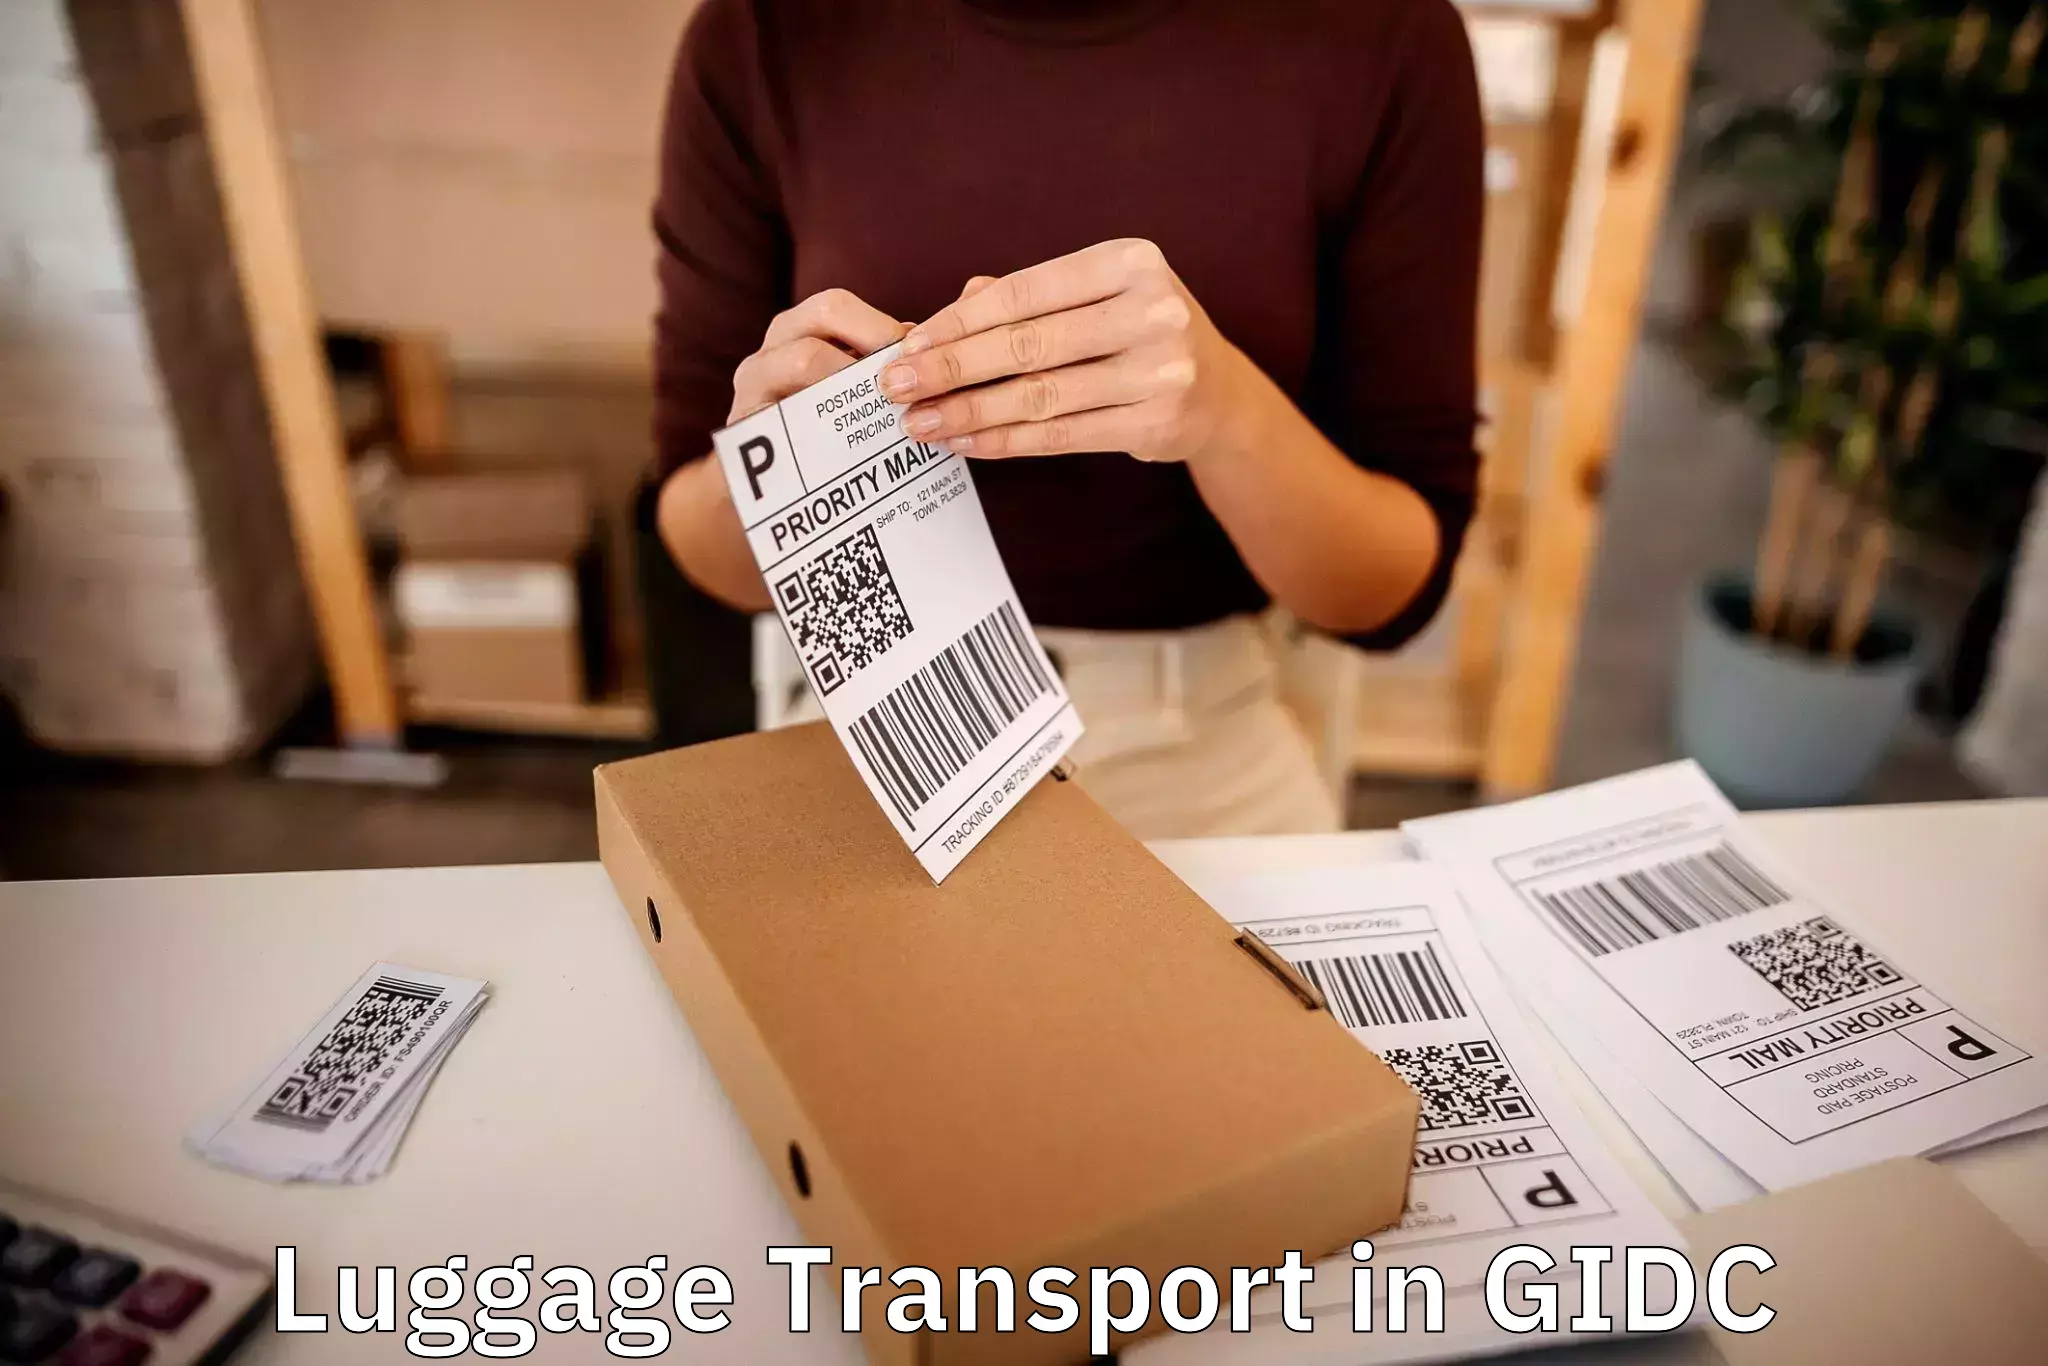 Regional luggage transport in GIDC